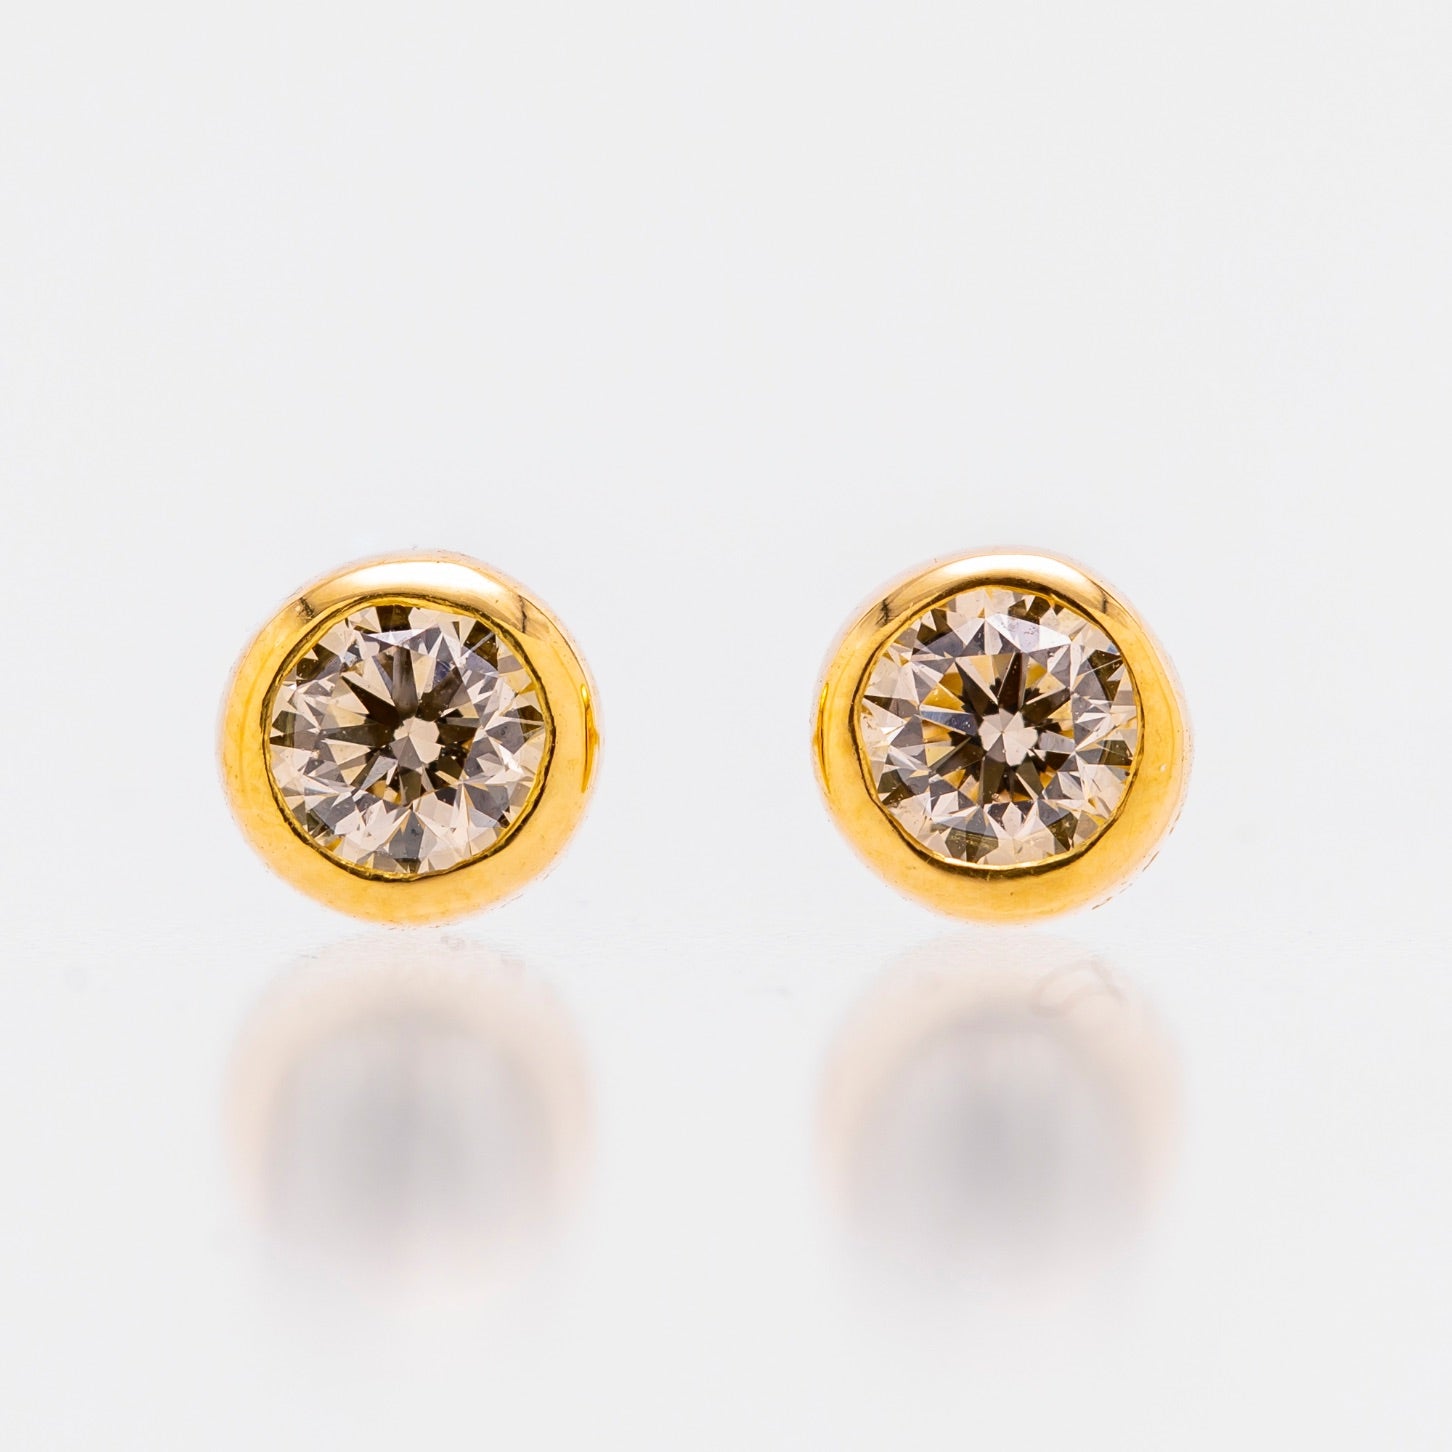 K18 Sirius/Sirius Diamond 0.4ct earrings